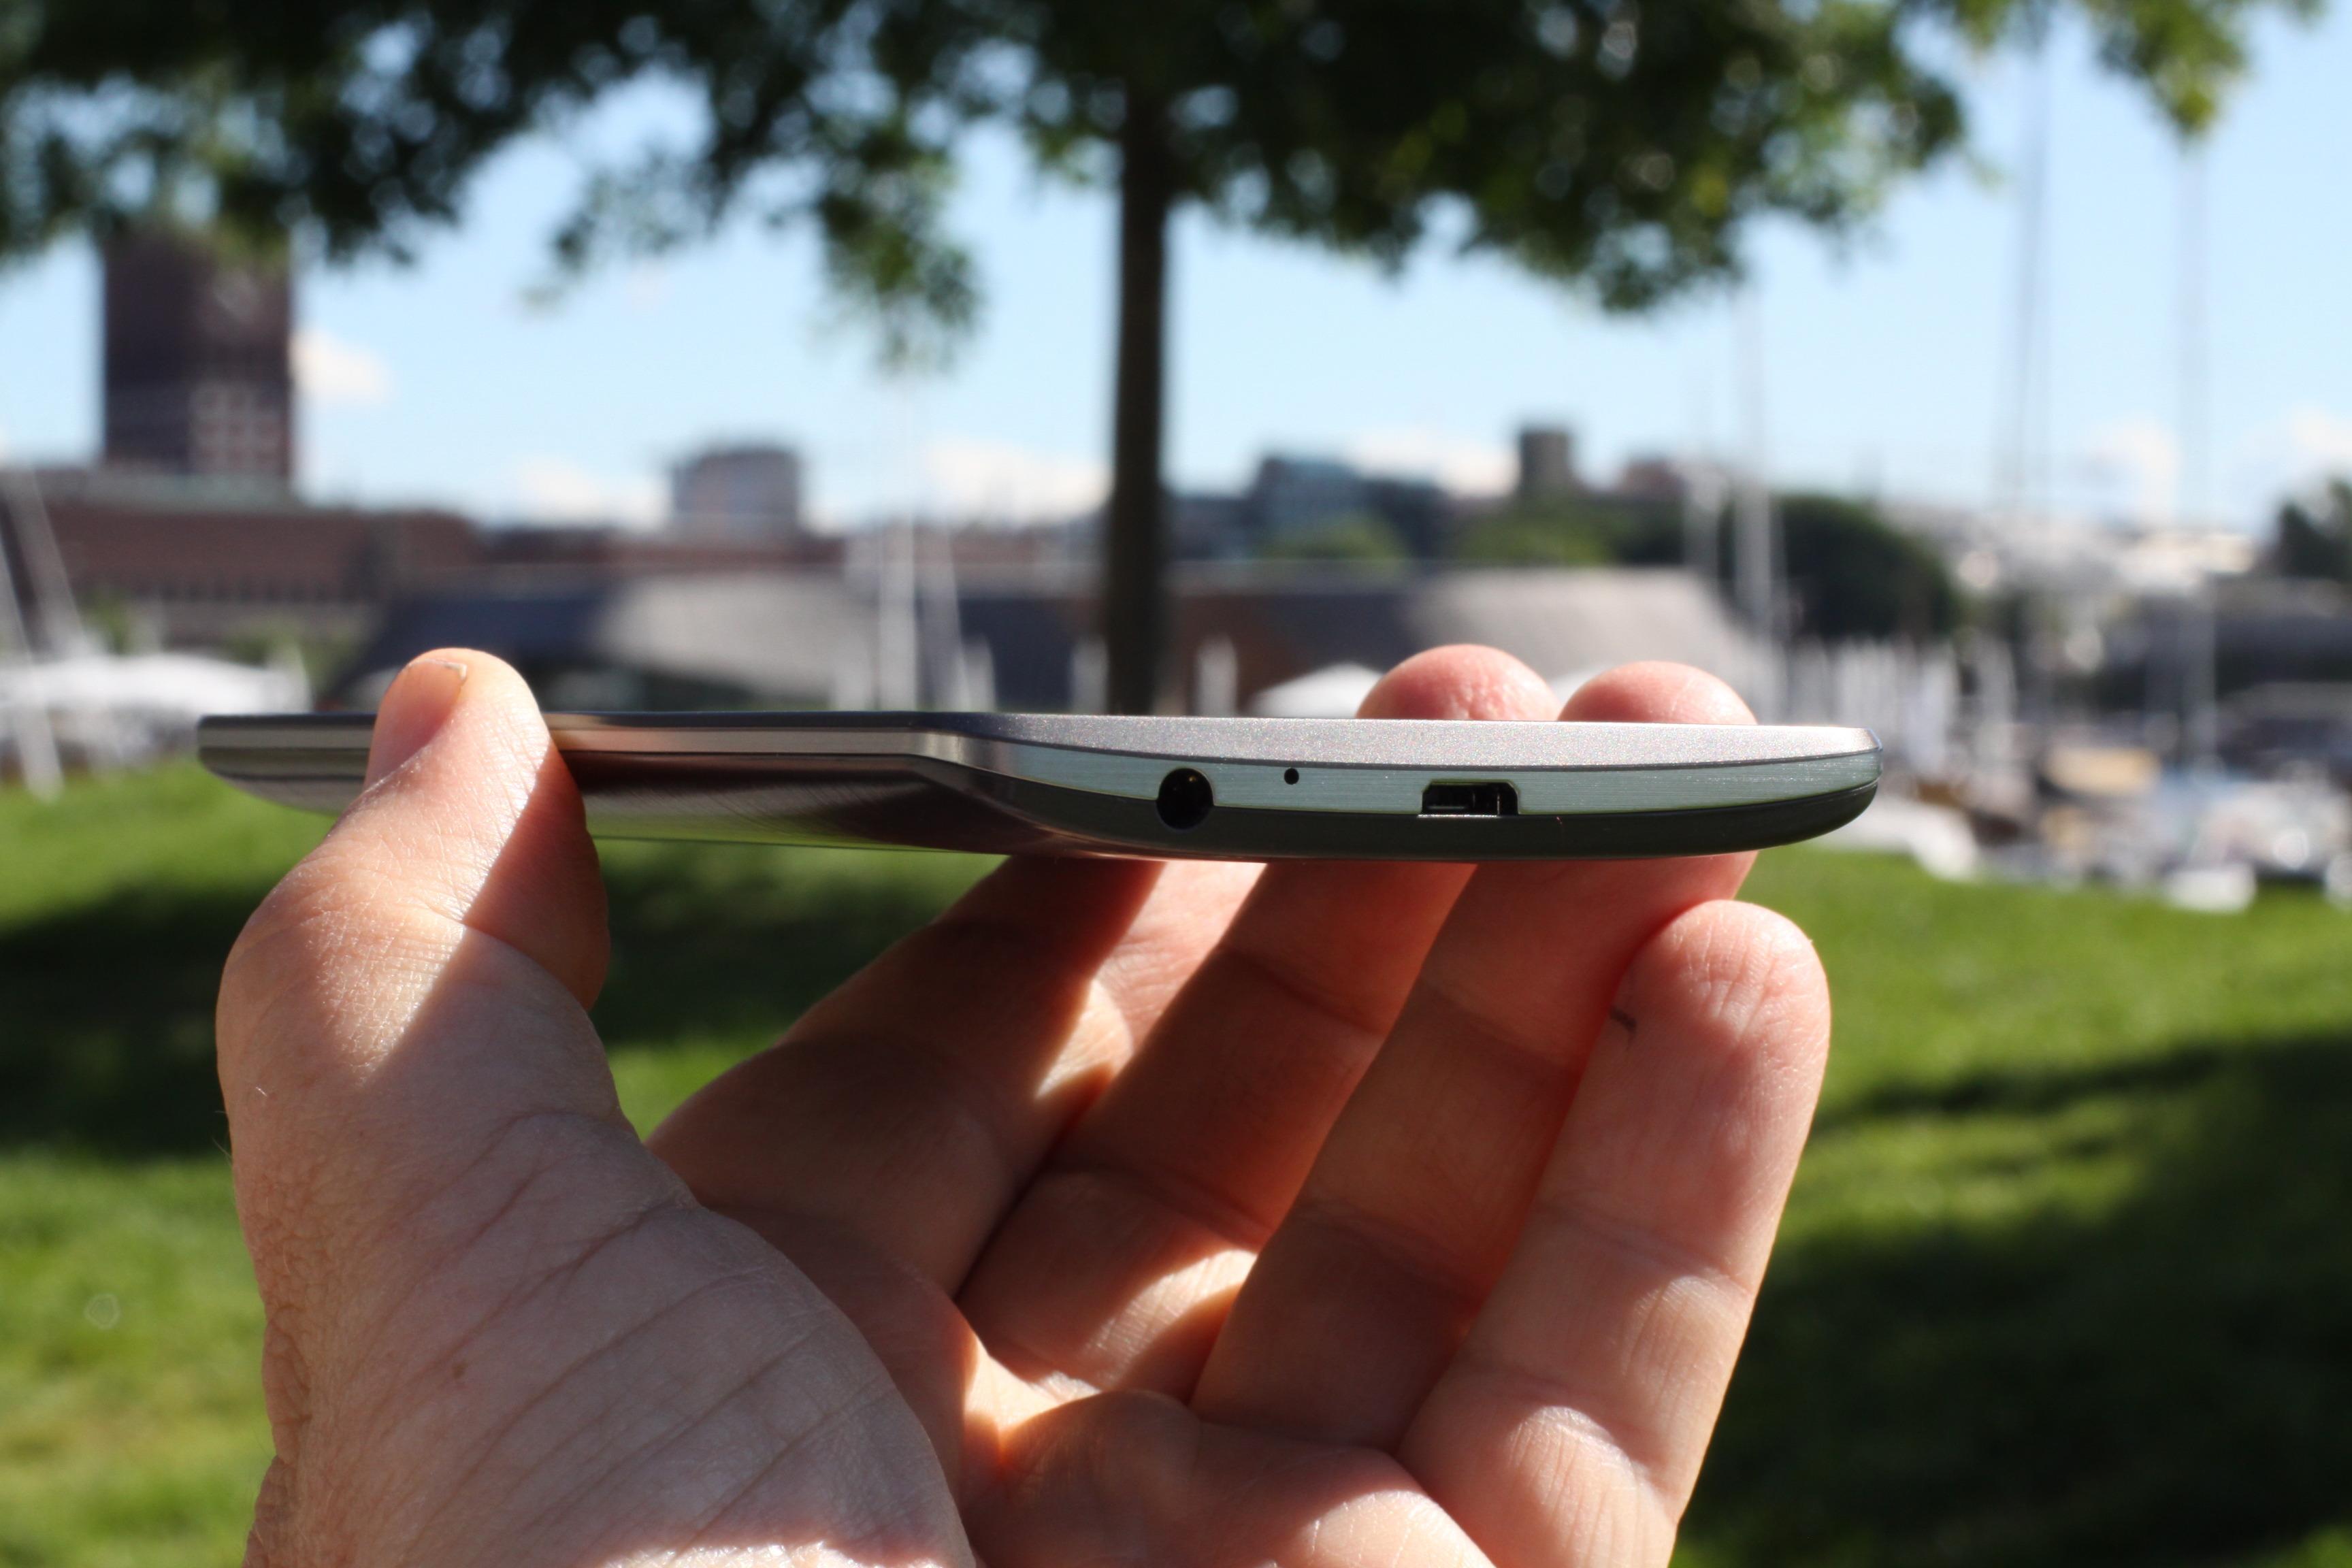 Til tross for kjempeskjermen føles LG G3 relativt kompakt i hånden.Foto: Espen Irwing Swang, Amobil.no